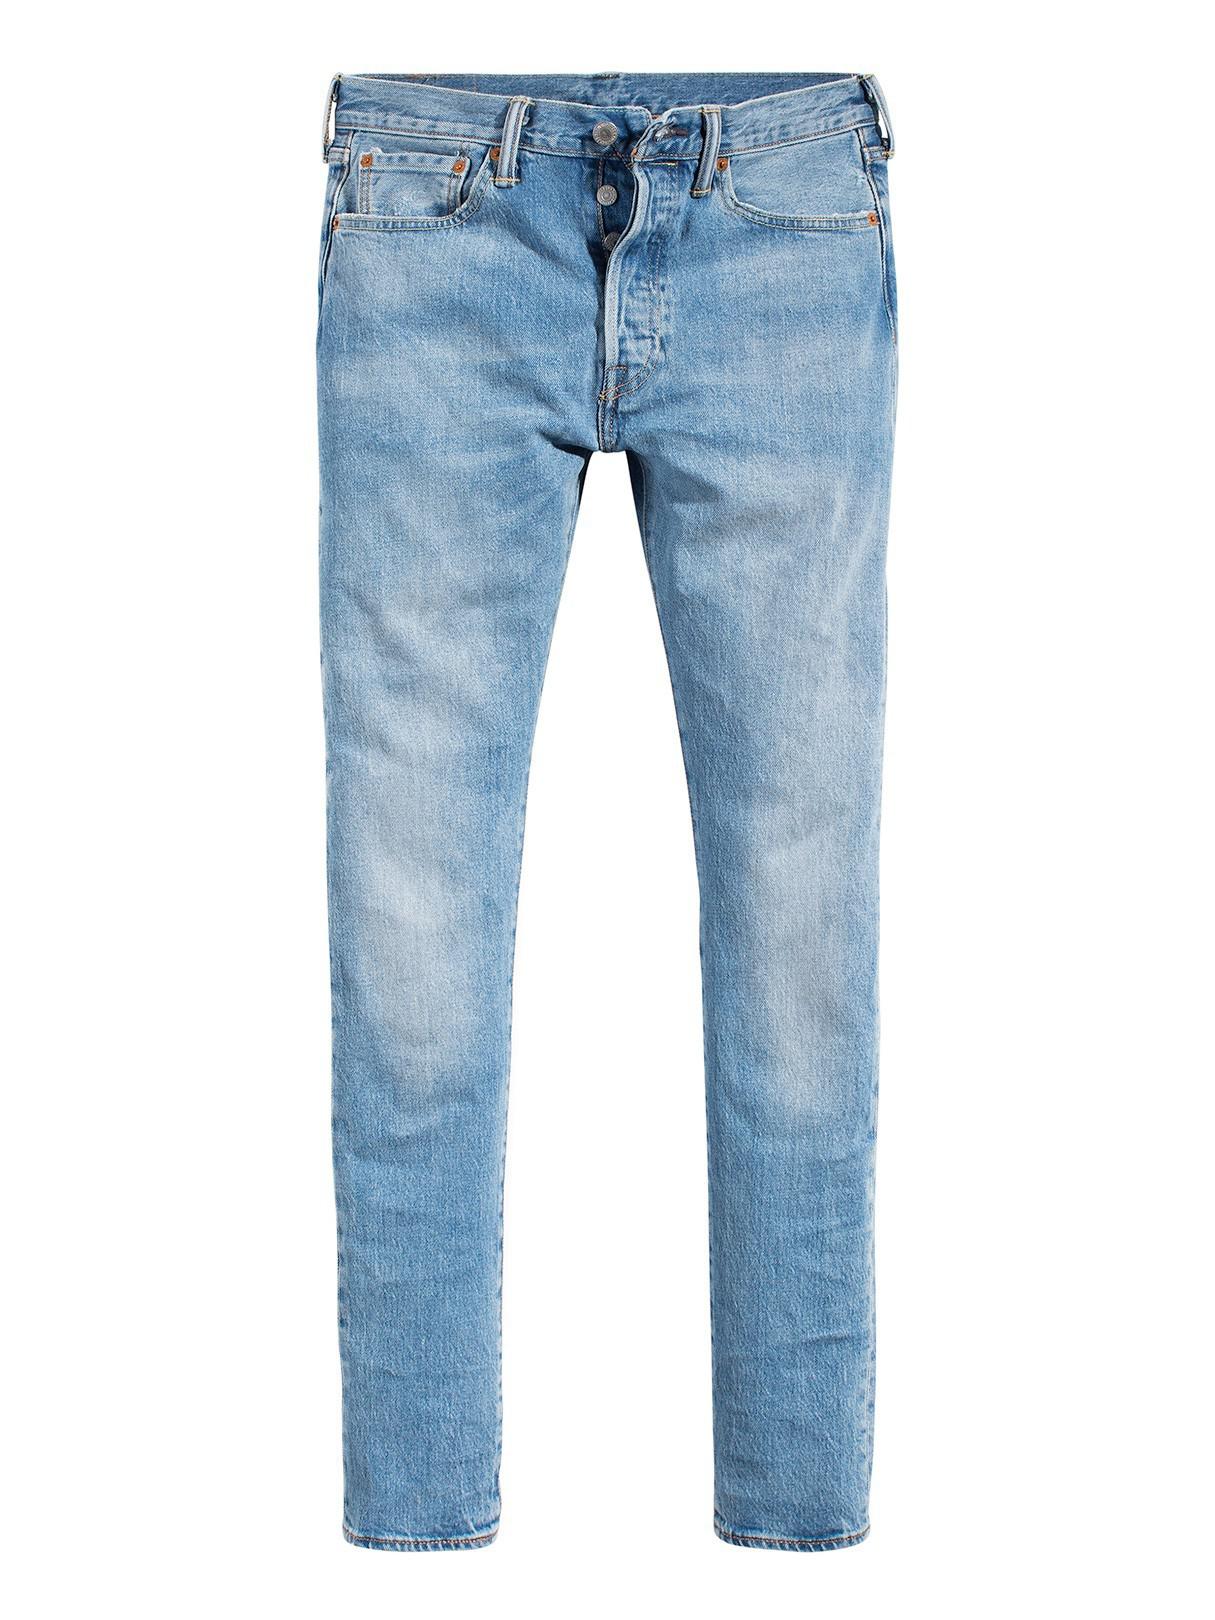 Denim West Coast 501 Skinny Jeans 